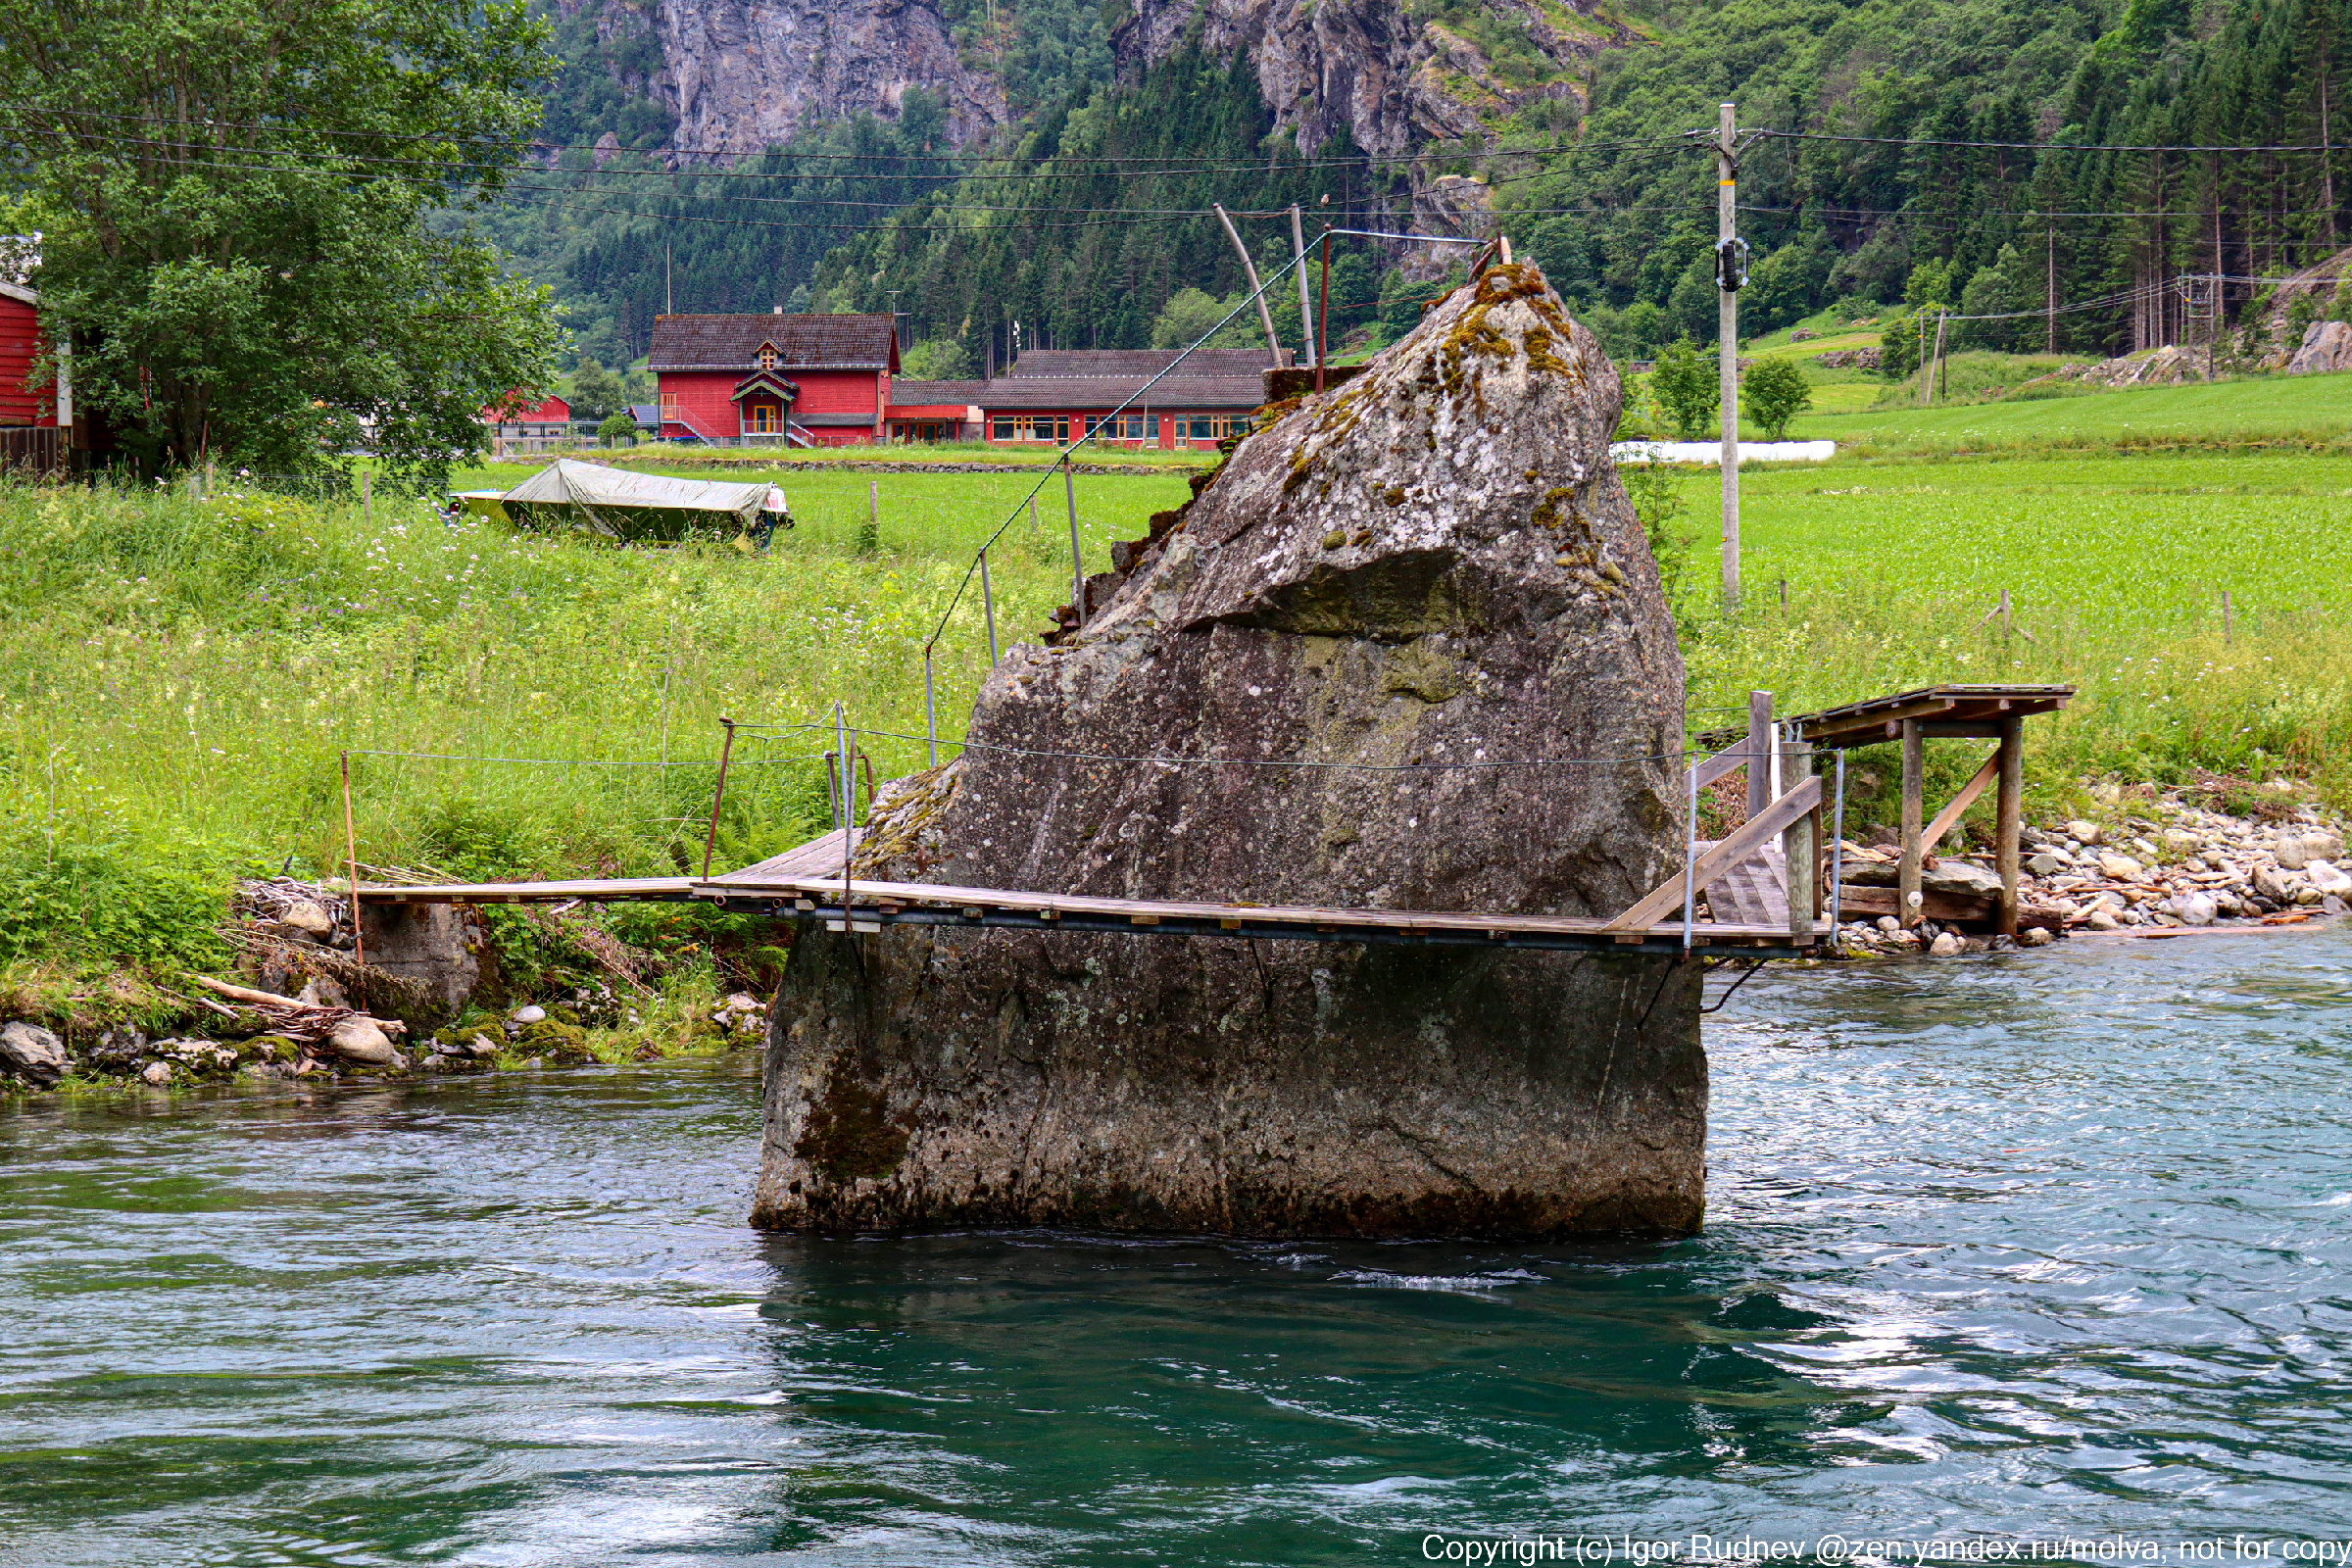 "Да у них там без лицензии даже на рыбалку не пойдешь" — рассказываю, как обстоят дела с рыбалкой в Норвегии